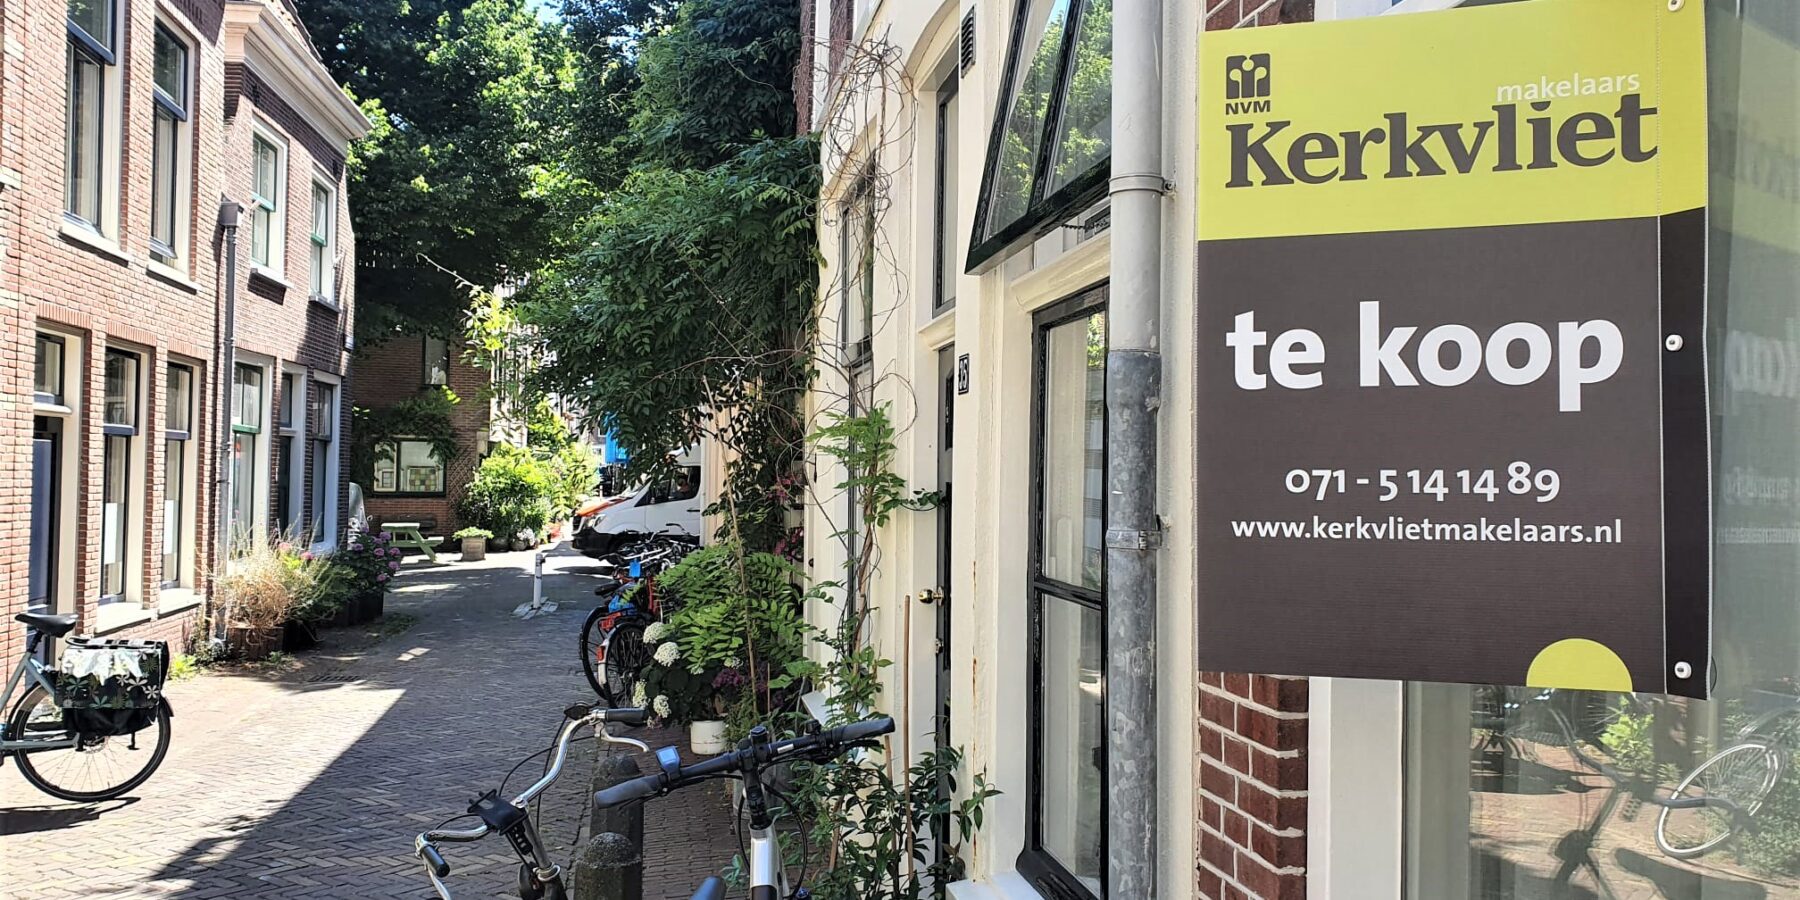 Susteen voor de hand liggend Kameel Meer huizen op de markt in regio Leiden, maar 'evenwichtige woningmarkt nog  ver weg' | Sleutelstad